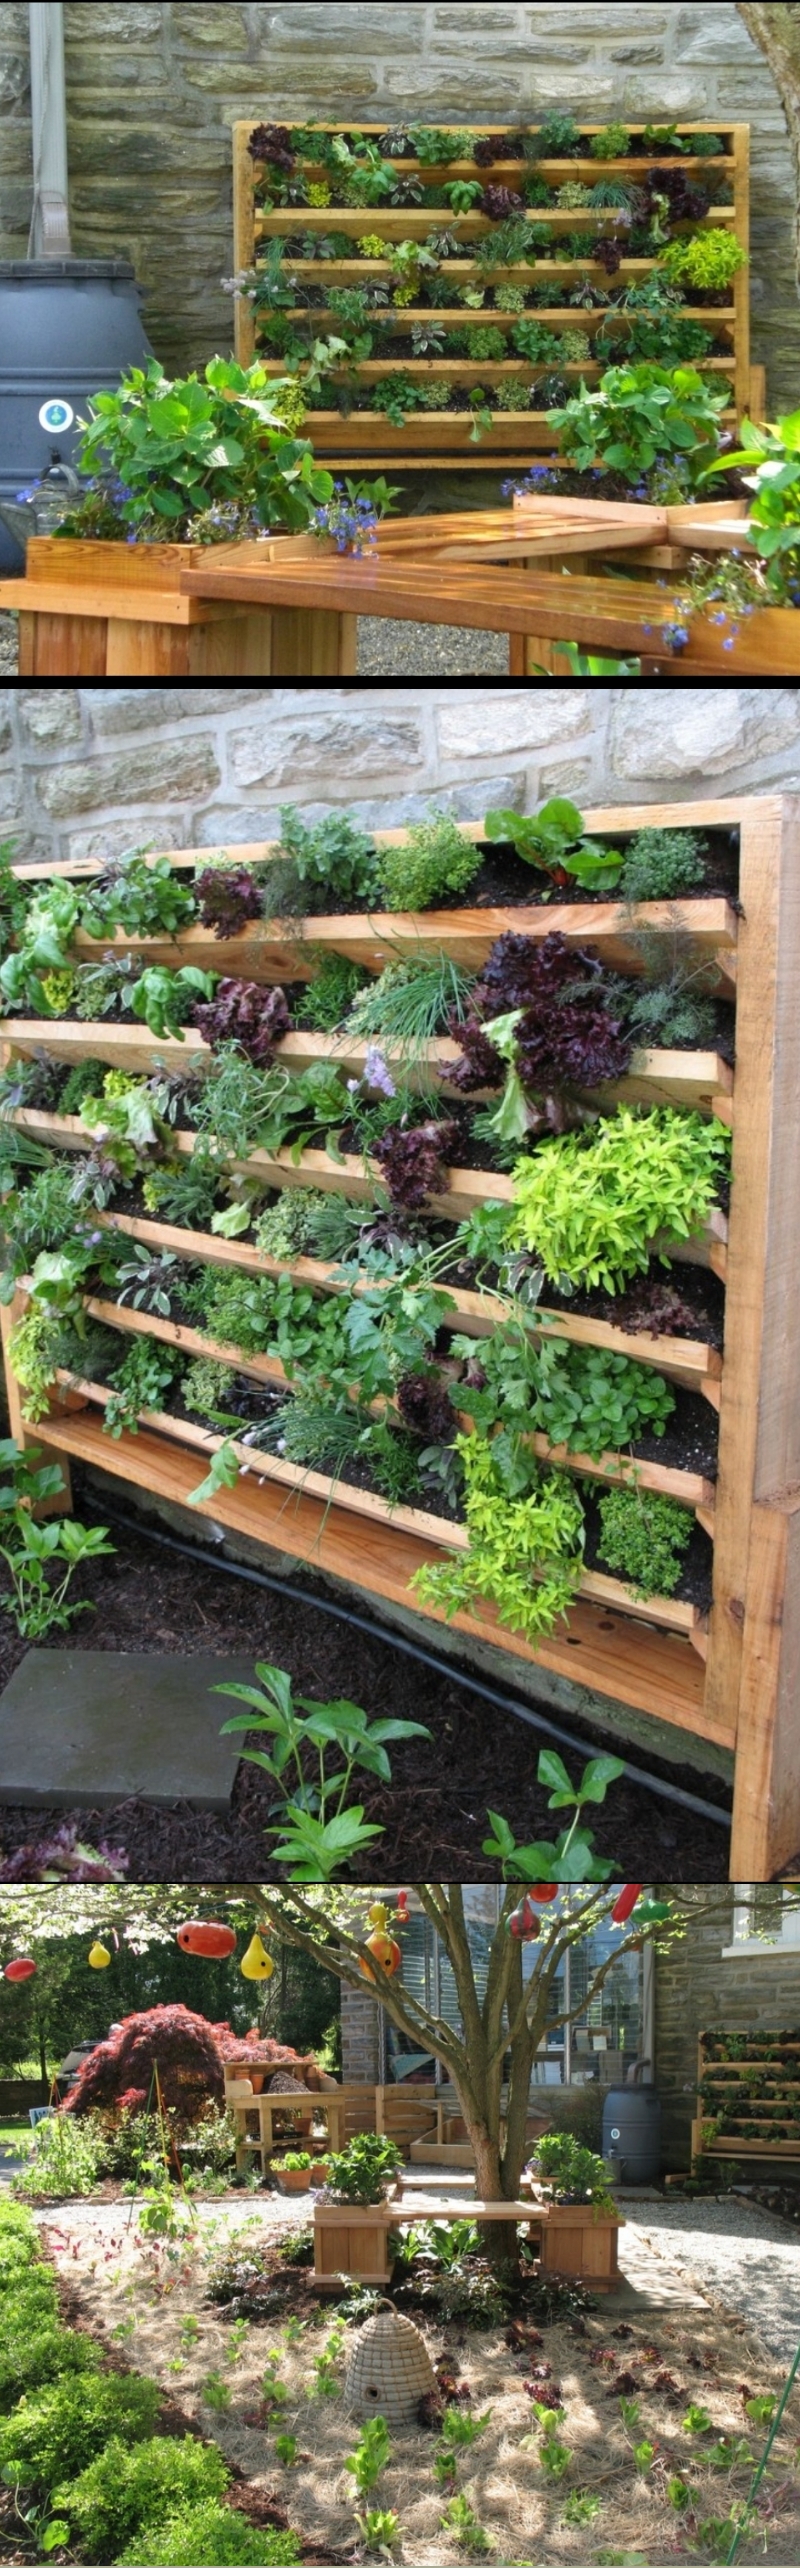 herb garden ideas for beginners